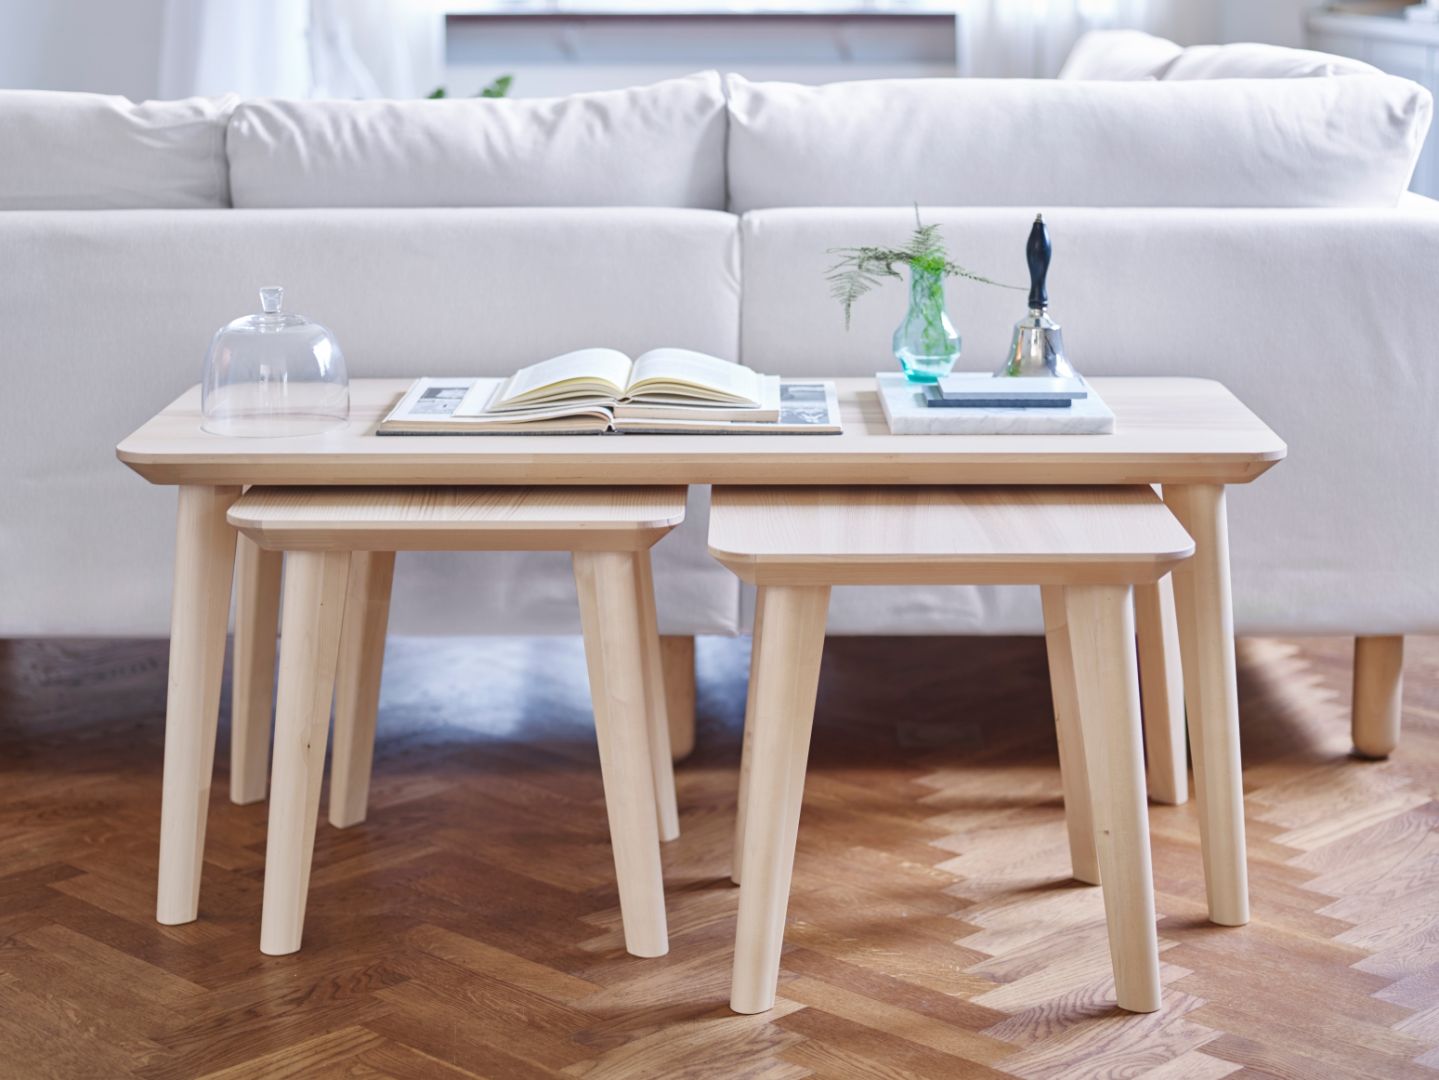 Ława z kolekcji Lisabo posiada stołki, które można schować pod blatem, a w chwili kiedy będą potrzebne, wyjąć je. Fot. IKEA